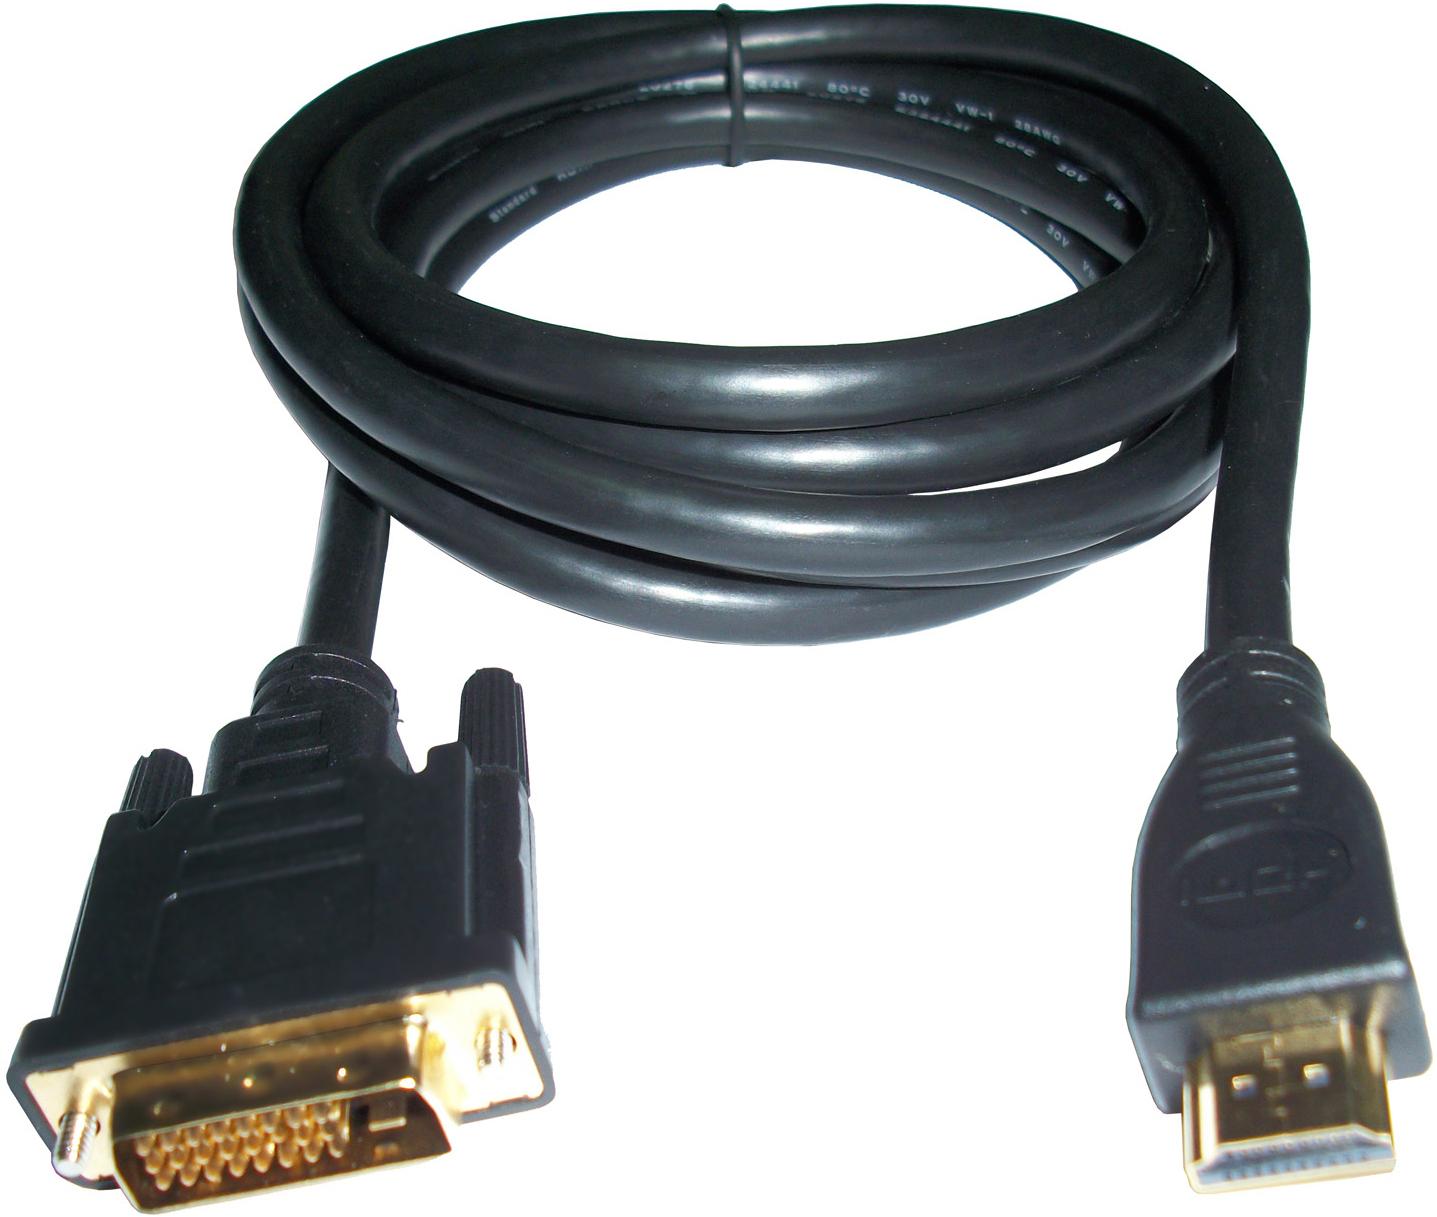 Foto Cable 3GO cable 3go dvi-m/hdmi-m 2m blister [CDVIHDMI] [8436531551407]